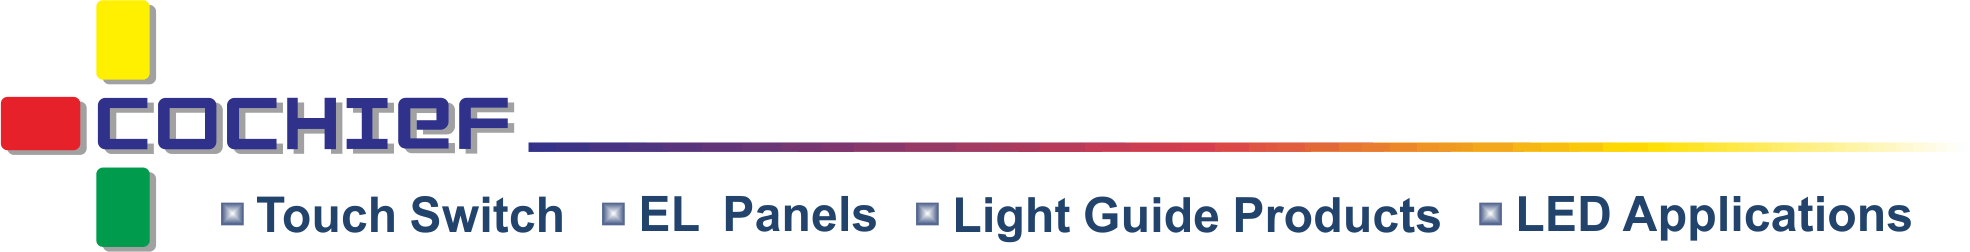 Cochief Industrial Co., Ltd. - Somos fabricantes profesionales para proporcionar un módulo de interruptor táctil de iluminación inteligente único y versátil, película de guía de luz y panel EL.